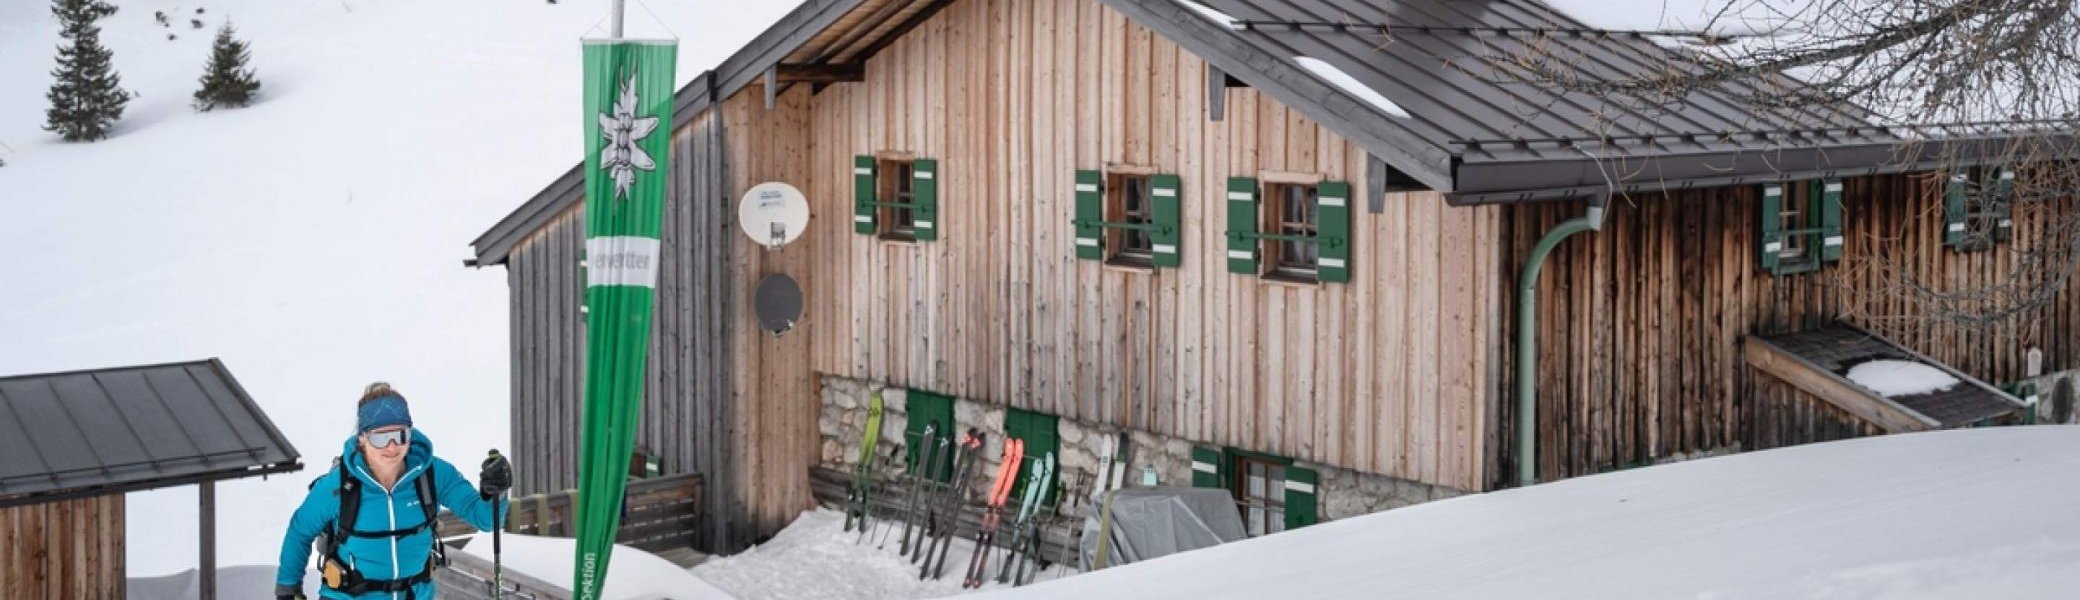 Einige DAV-Hütten haben auch im Winter geöffnet | © DAV/ Klaus Listl www.klauslistl.com